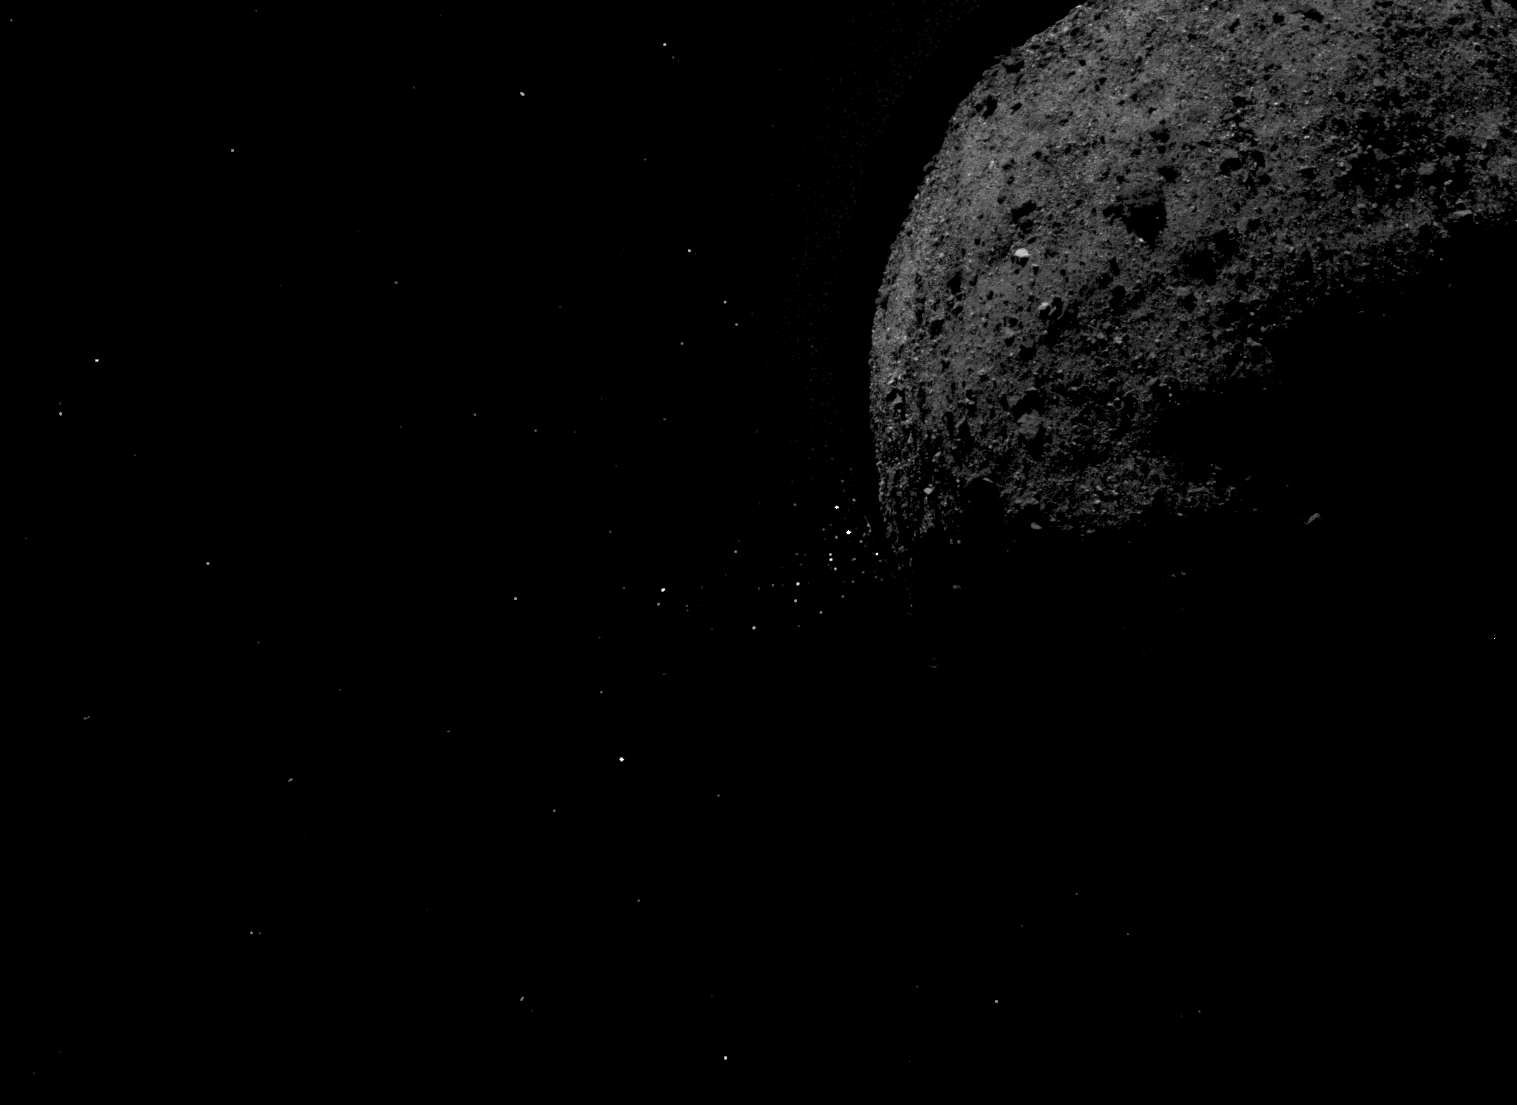 Asteroide Bennu expulsando partículas de roca de su superficie.